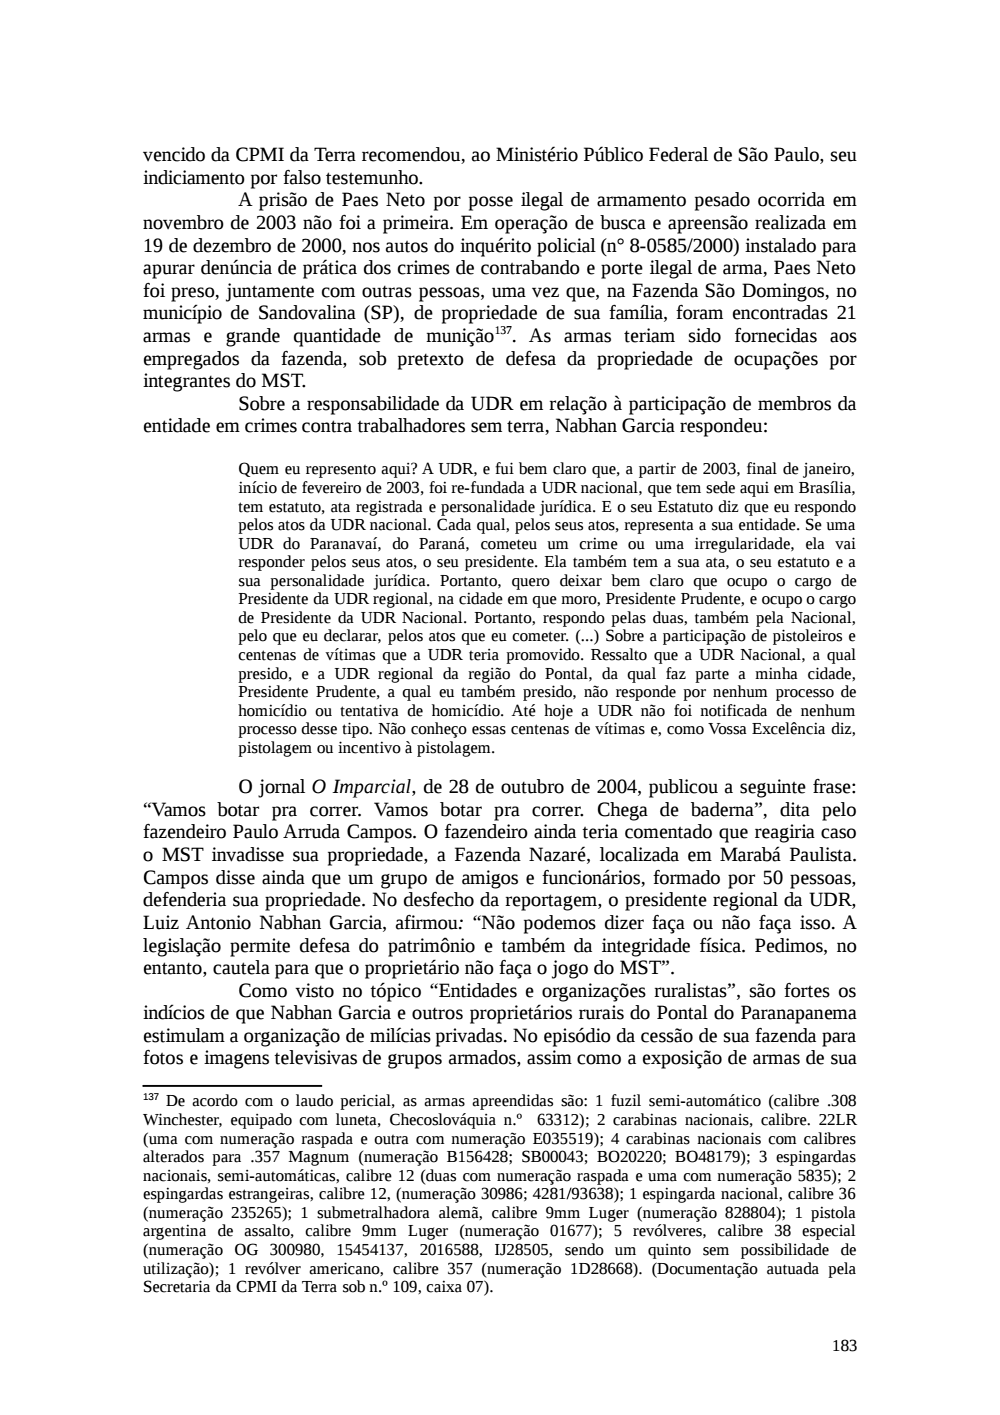 Page 183 from Relatório final da comissão